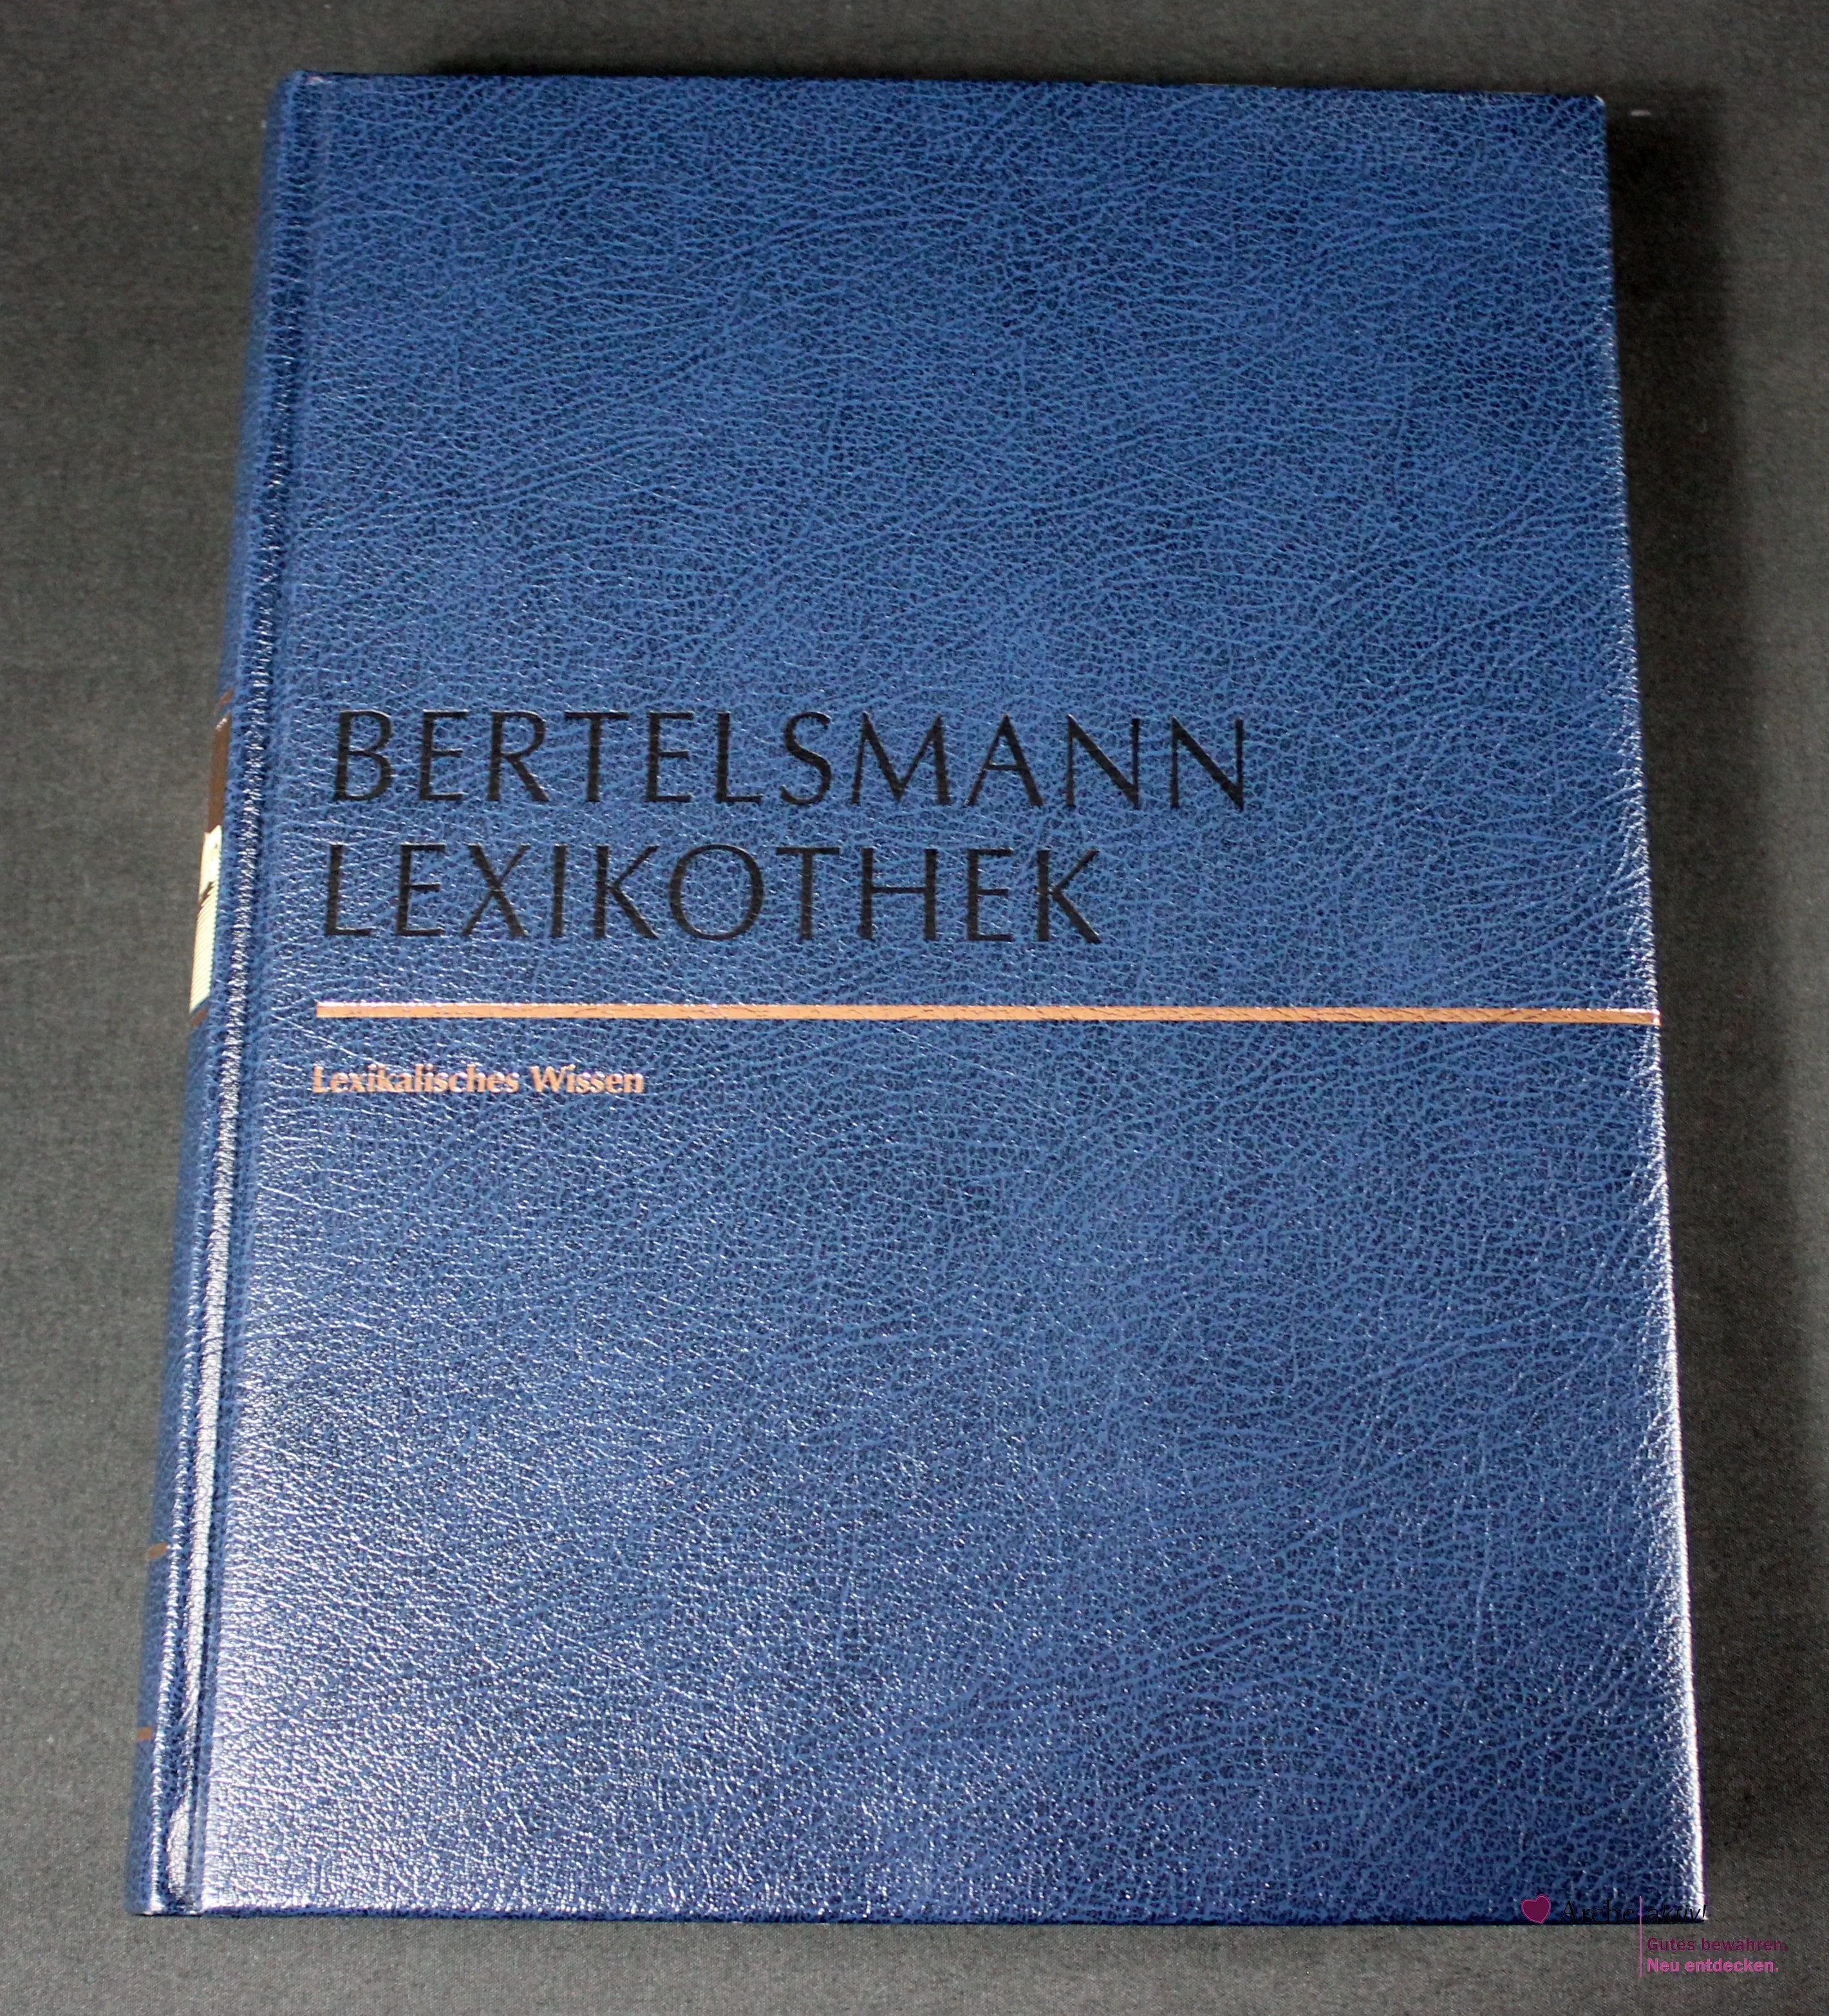 Bertelsmann Lexikothek - Lexikalisches Wissen - 2 Bände A-K und L-Z, gebraucht